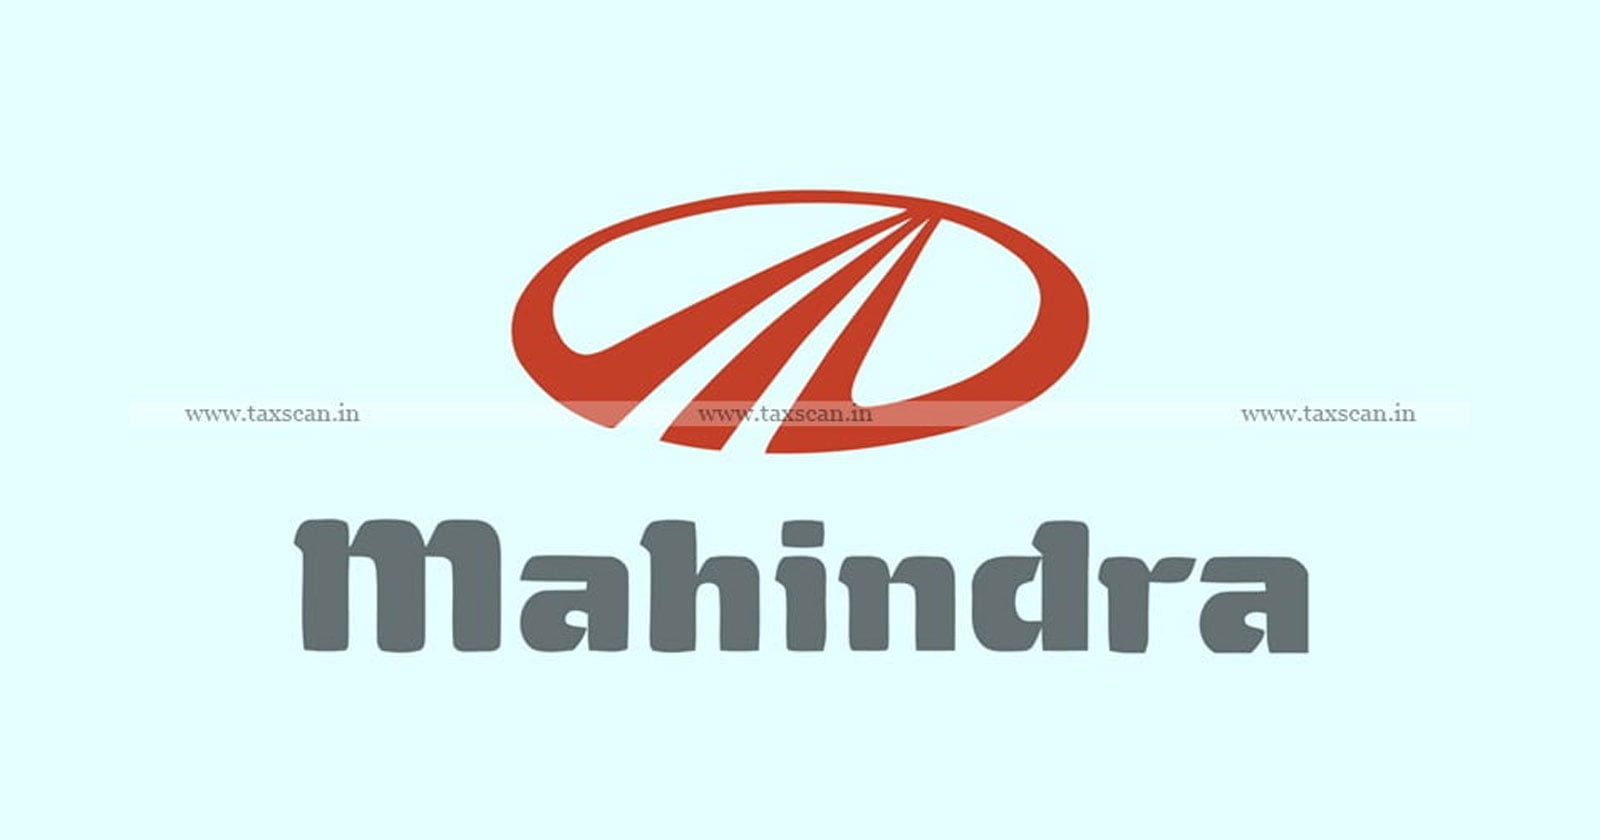 CA Vacancy in Mahindra - Vacancy in Mahindra - CA Hiring in Mahindra - Hiring in Mahindra - taxscan